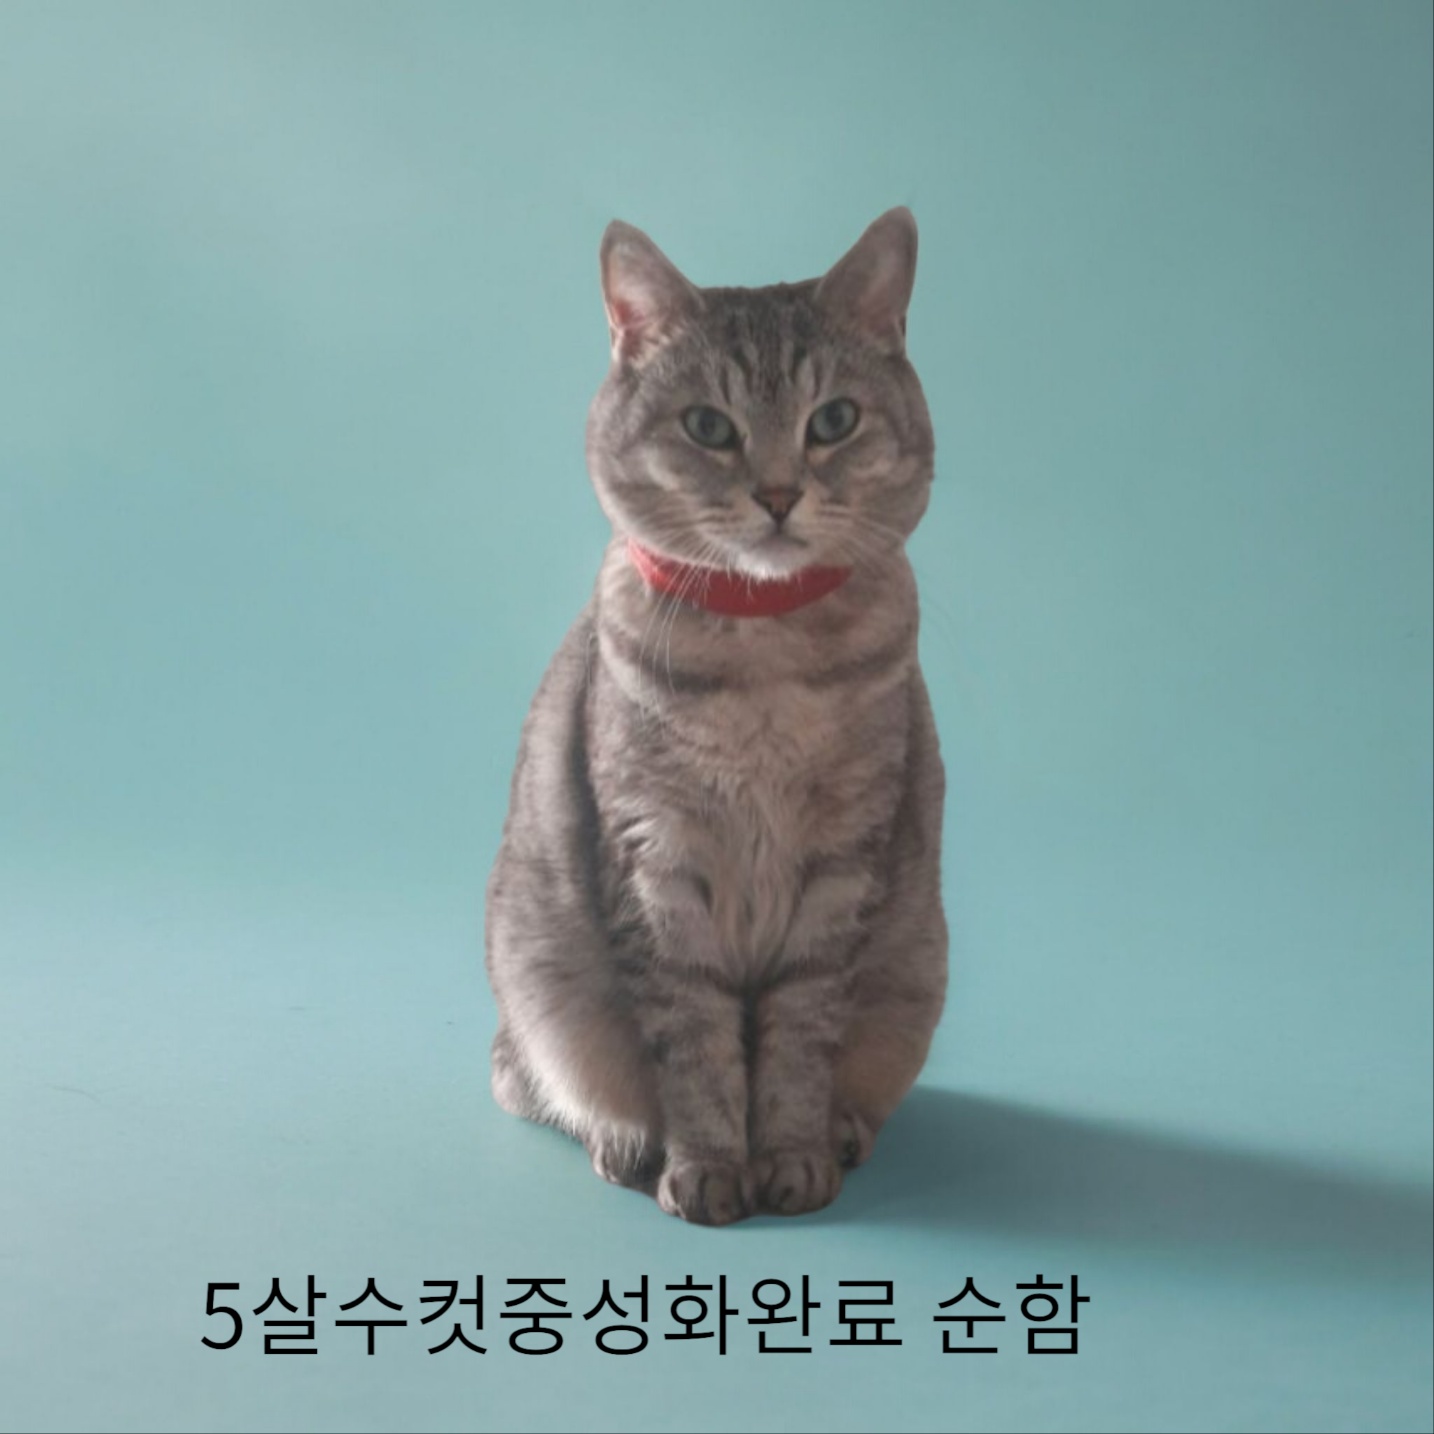 공고 번호가 경북-성주-2024-00218인 한국 고양이 동물 사진